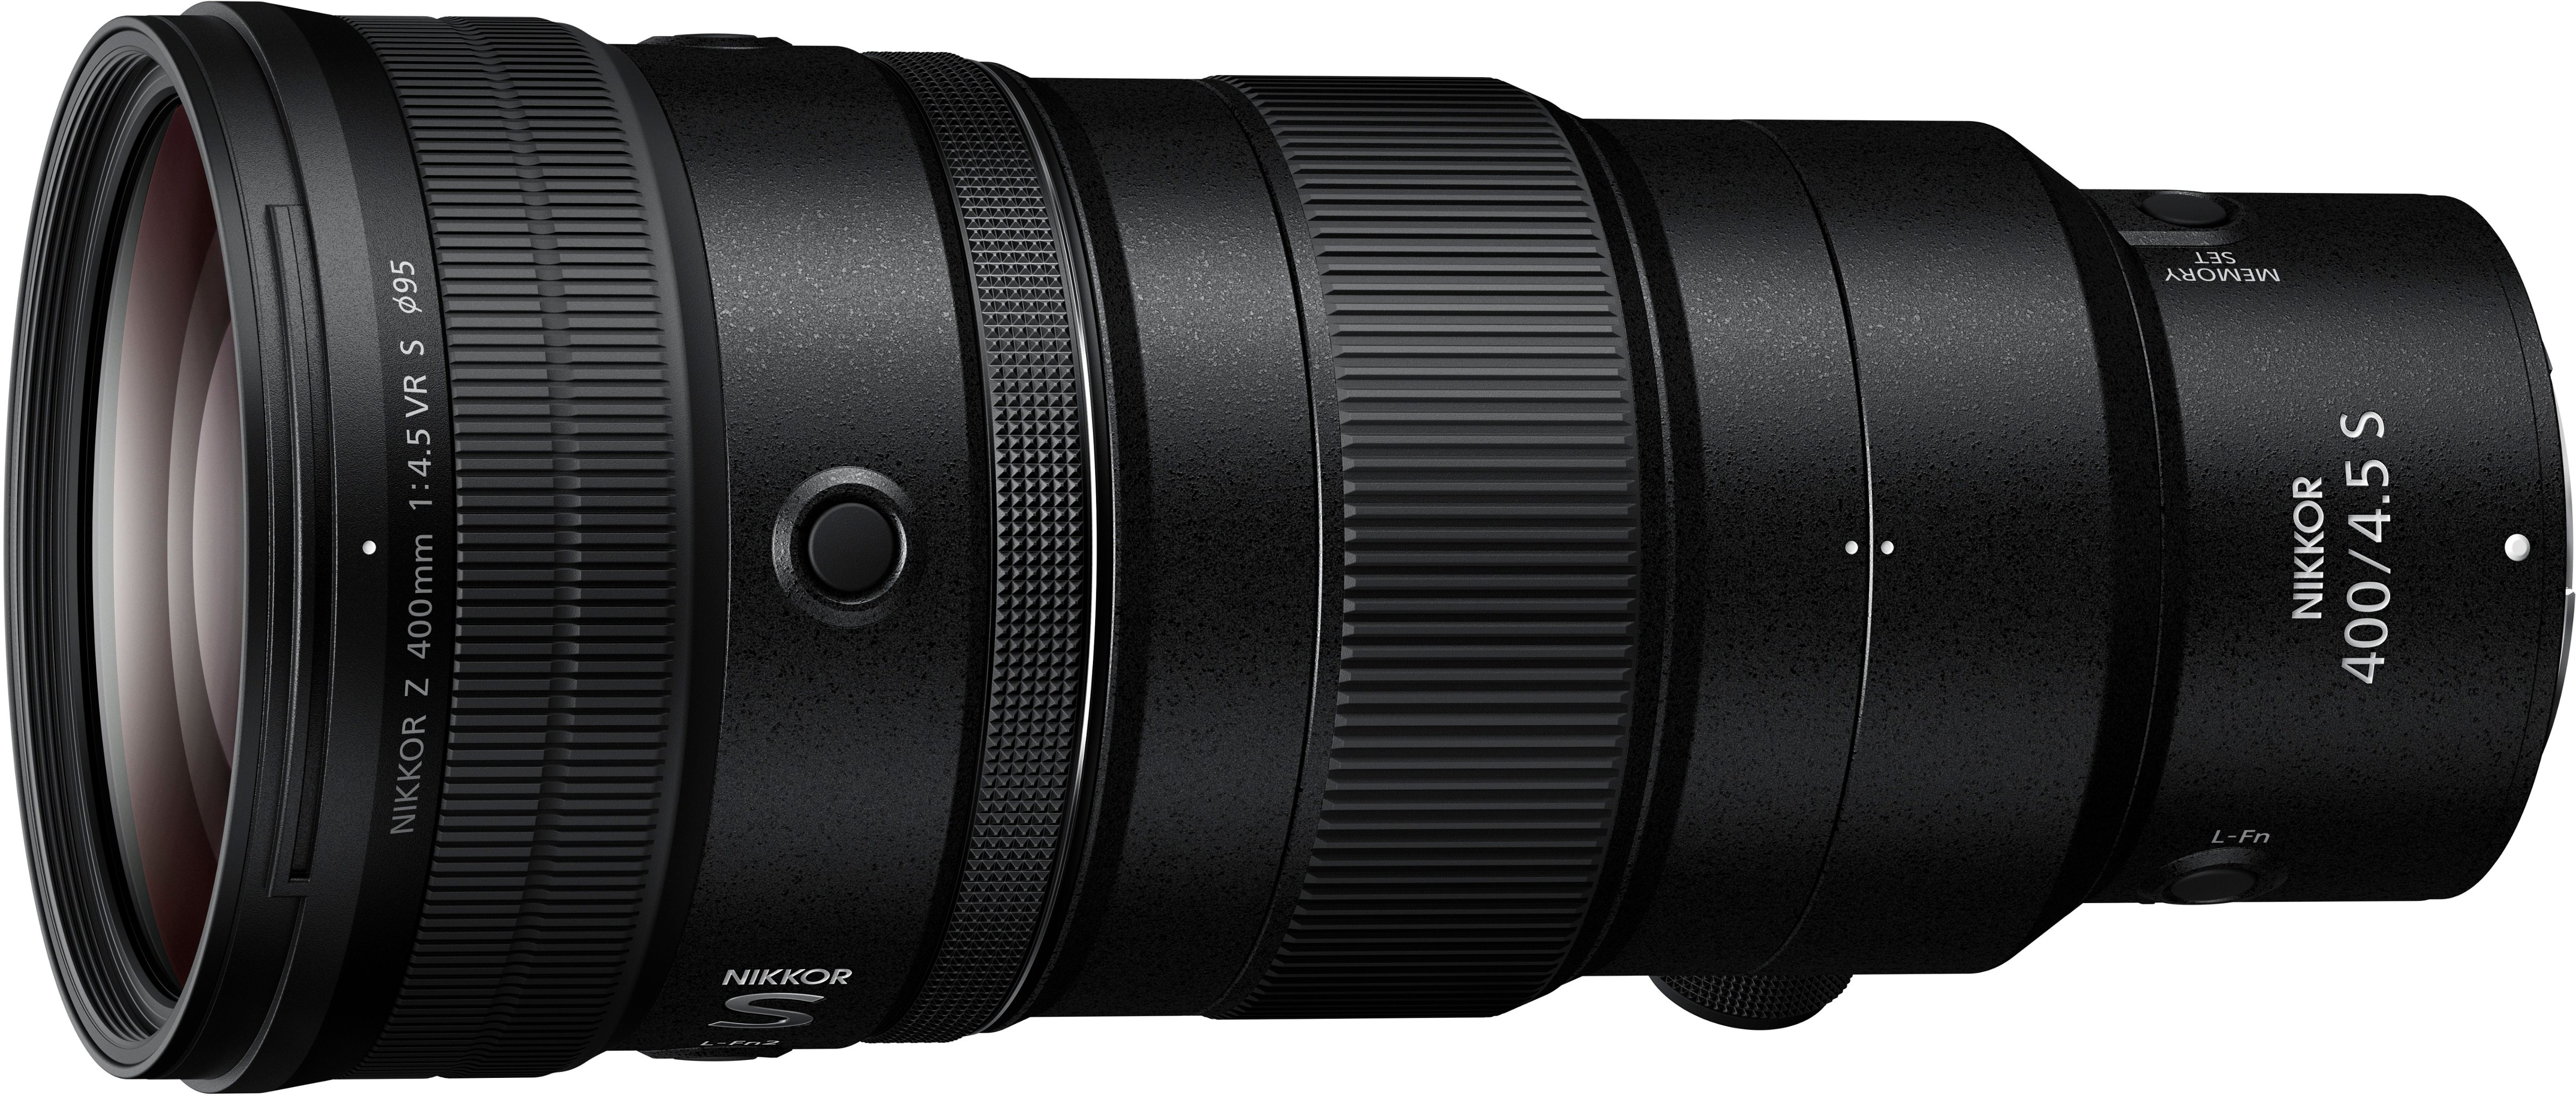 Back View: NIKKOR Z 400mm f/4.5 VR S Super-Telephoto Prime Lens for Nikon Z Mount Cameras - Black